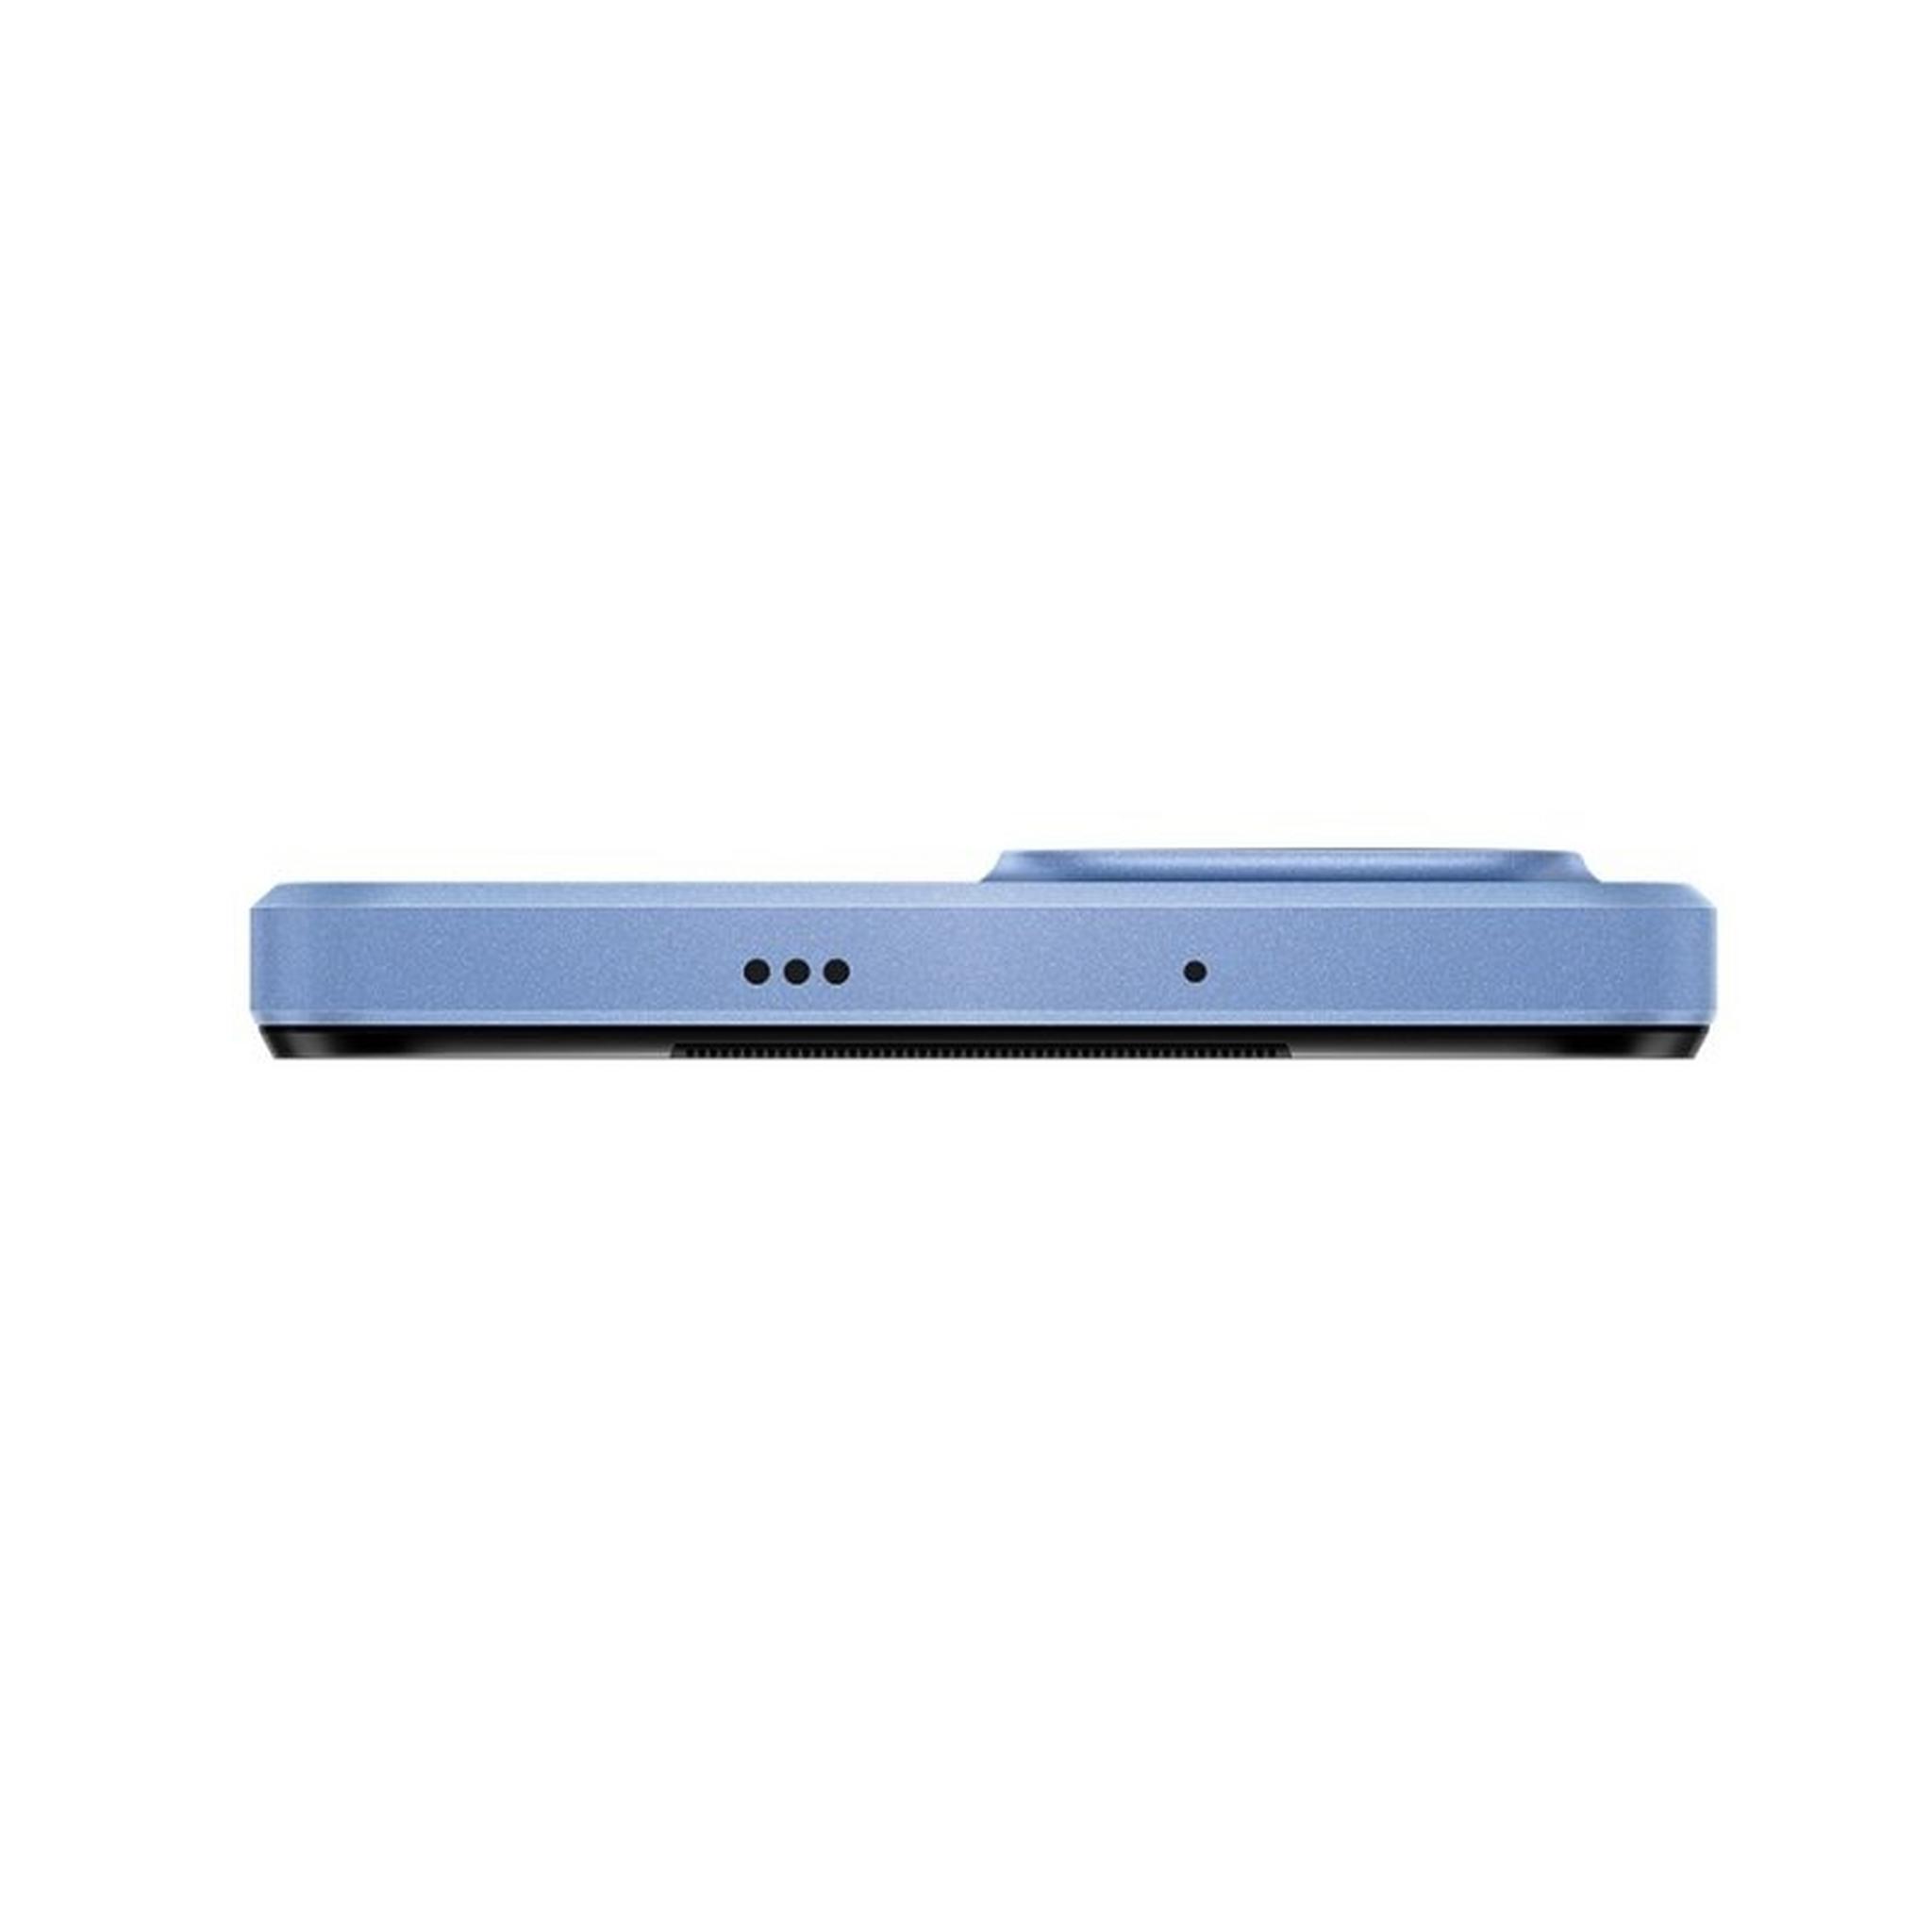 هاتف هواوي نوفا واي 61 بسعة 64 جيجابايت - أزرق